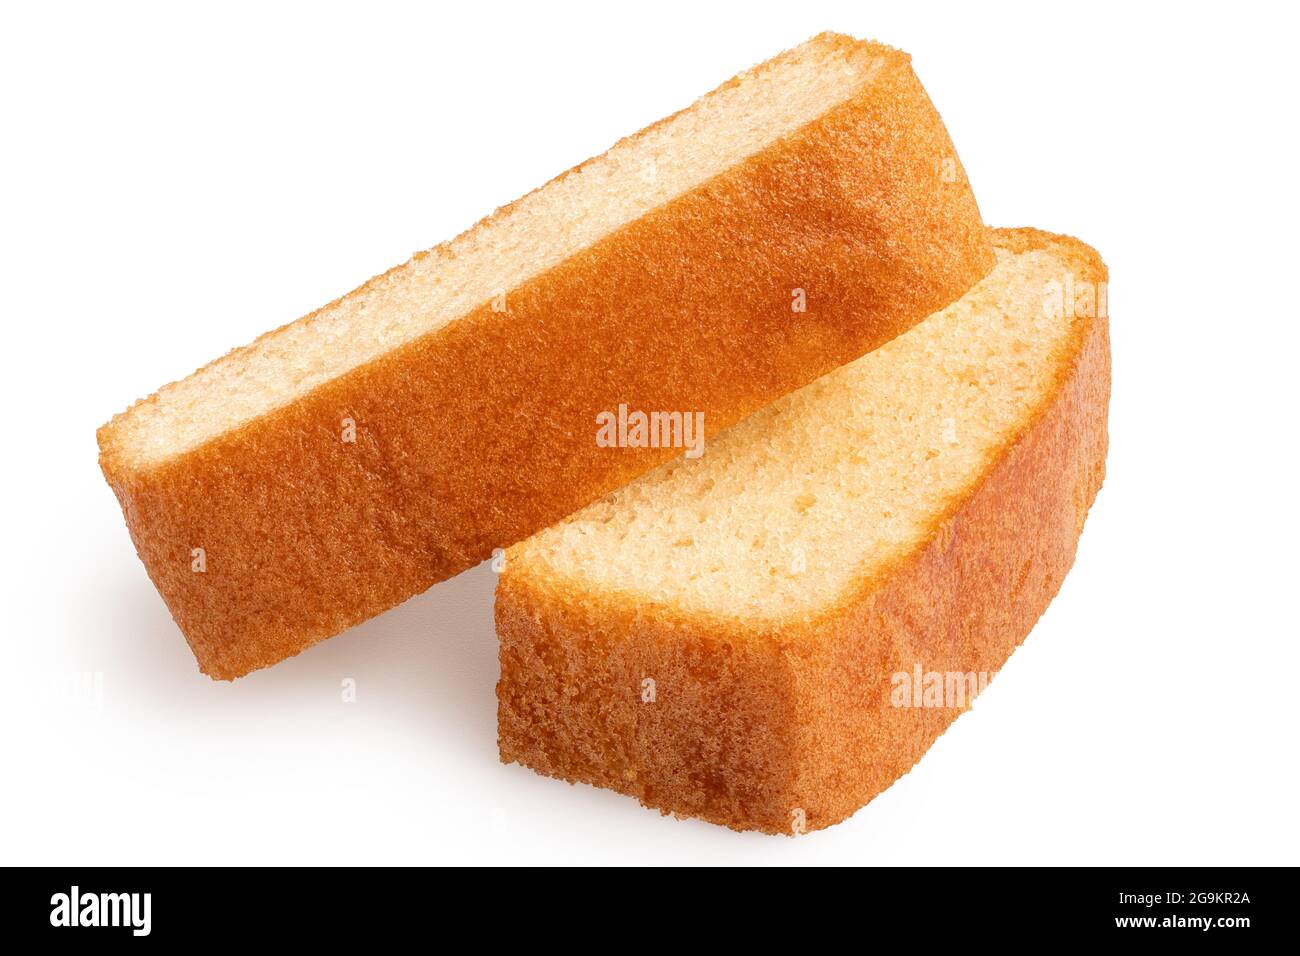 Two slices of plain sponge cake lying flat isolated on white. Stock Photo